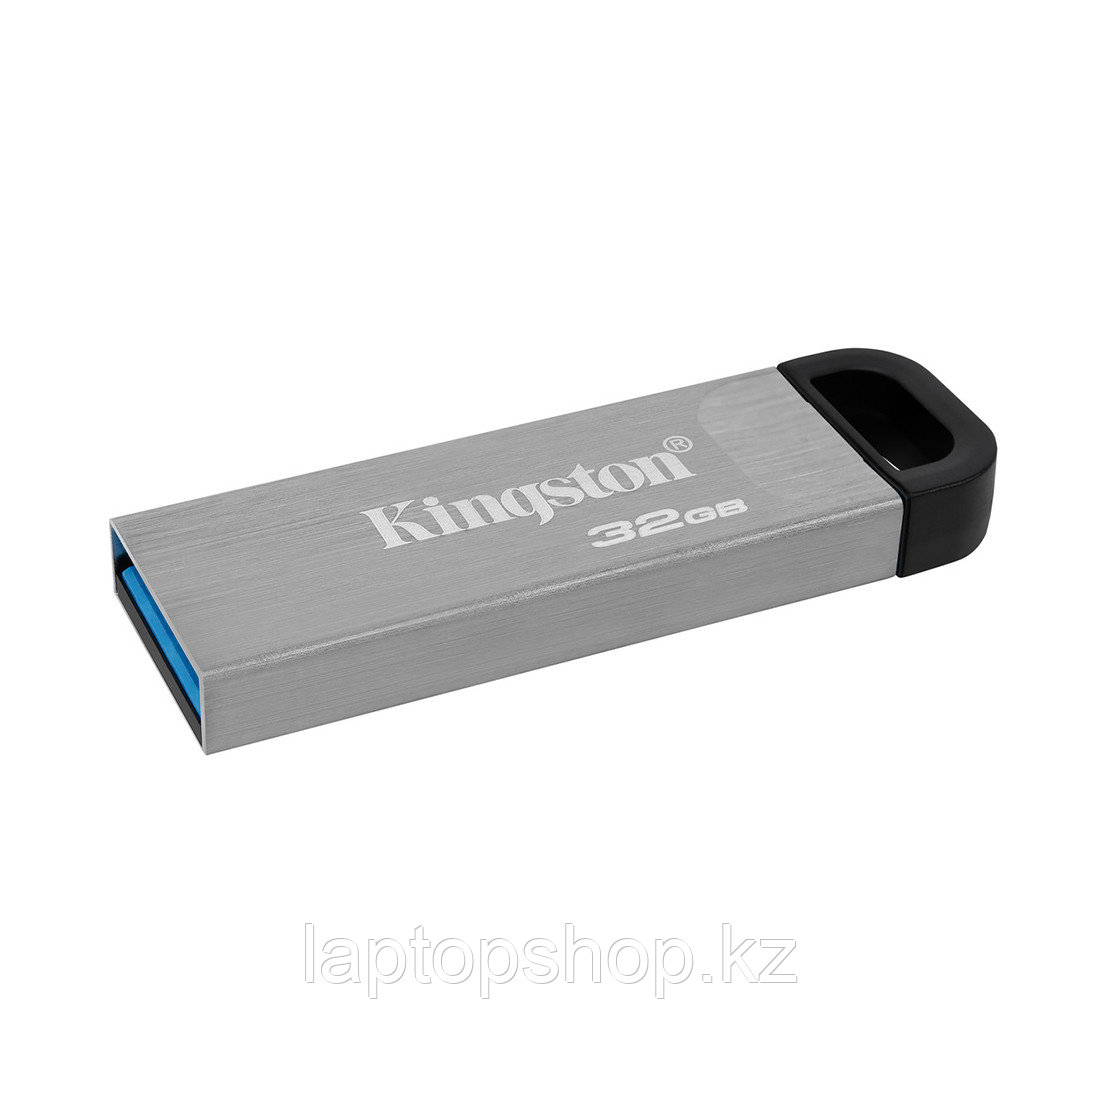 USB-накопитель Kingston DTKN/32GB 32GB Серебристый, фото 1